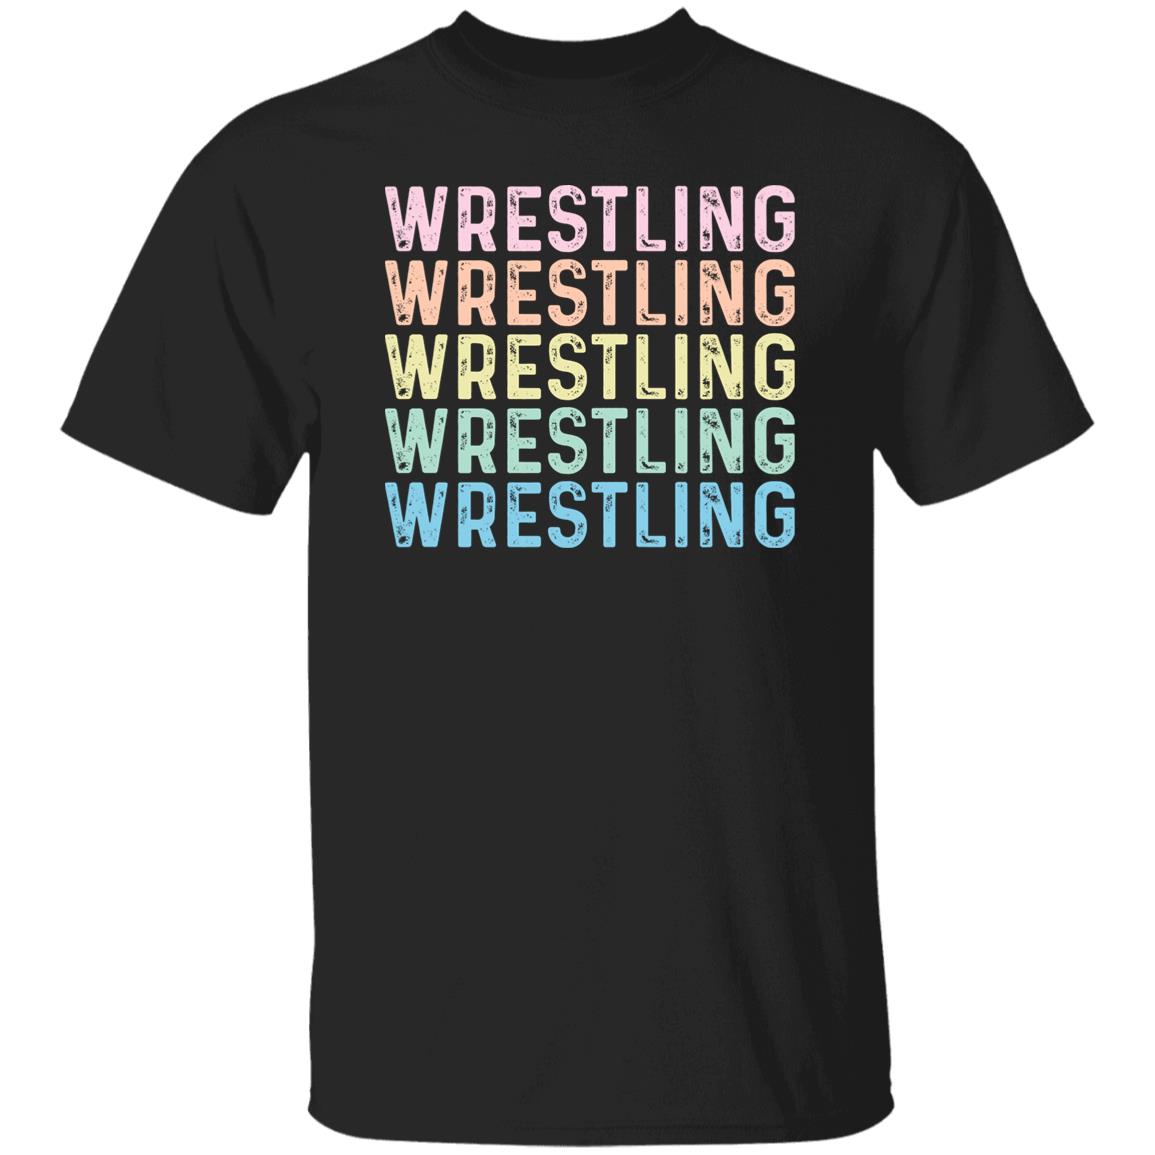 Wrestling Unisex Shirt, Wrestler tee Black S-2XL-Black-Family-Gift-Planet